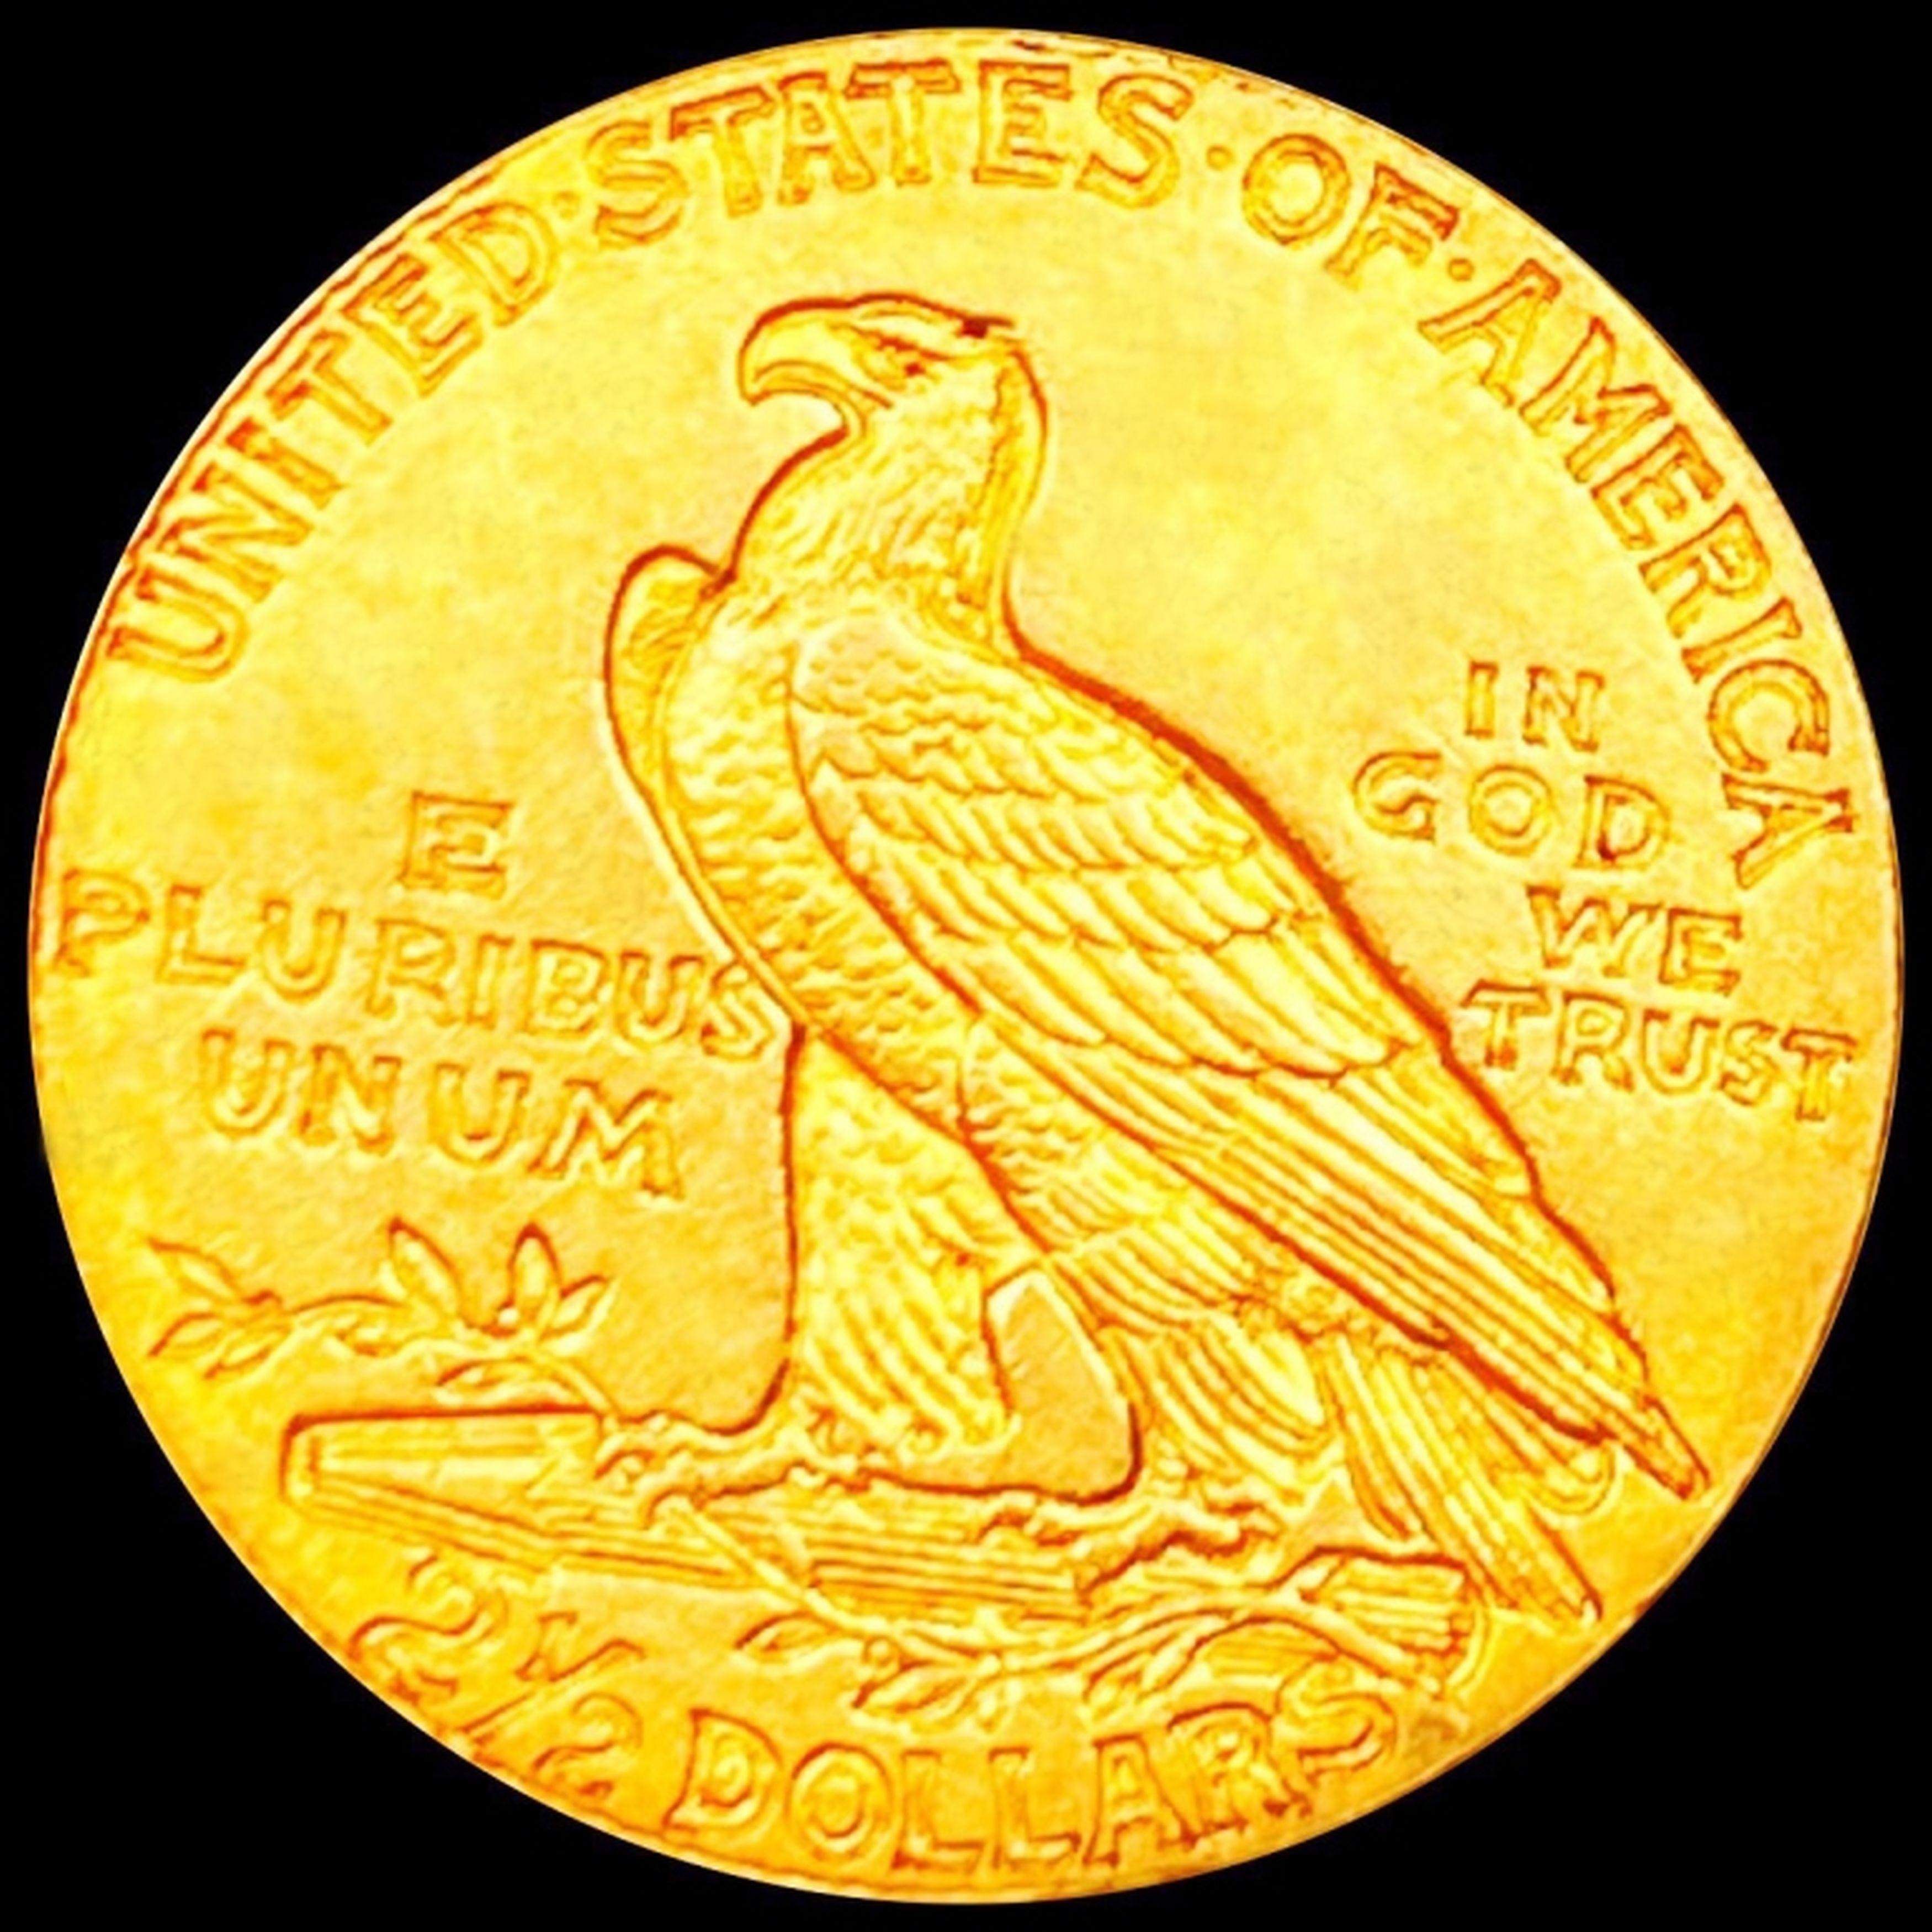 1911-D "STRNG D" $2.50 Gold Quarter Eagle CH AU